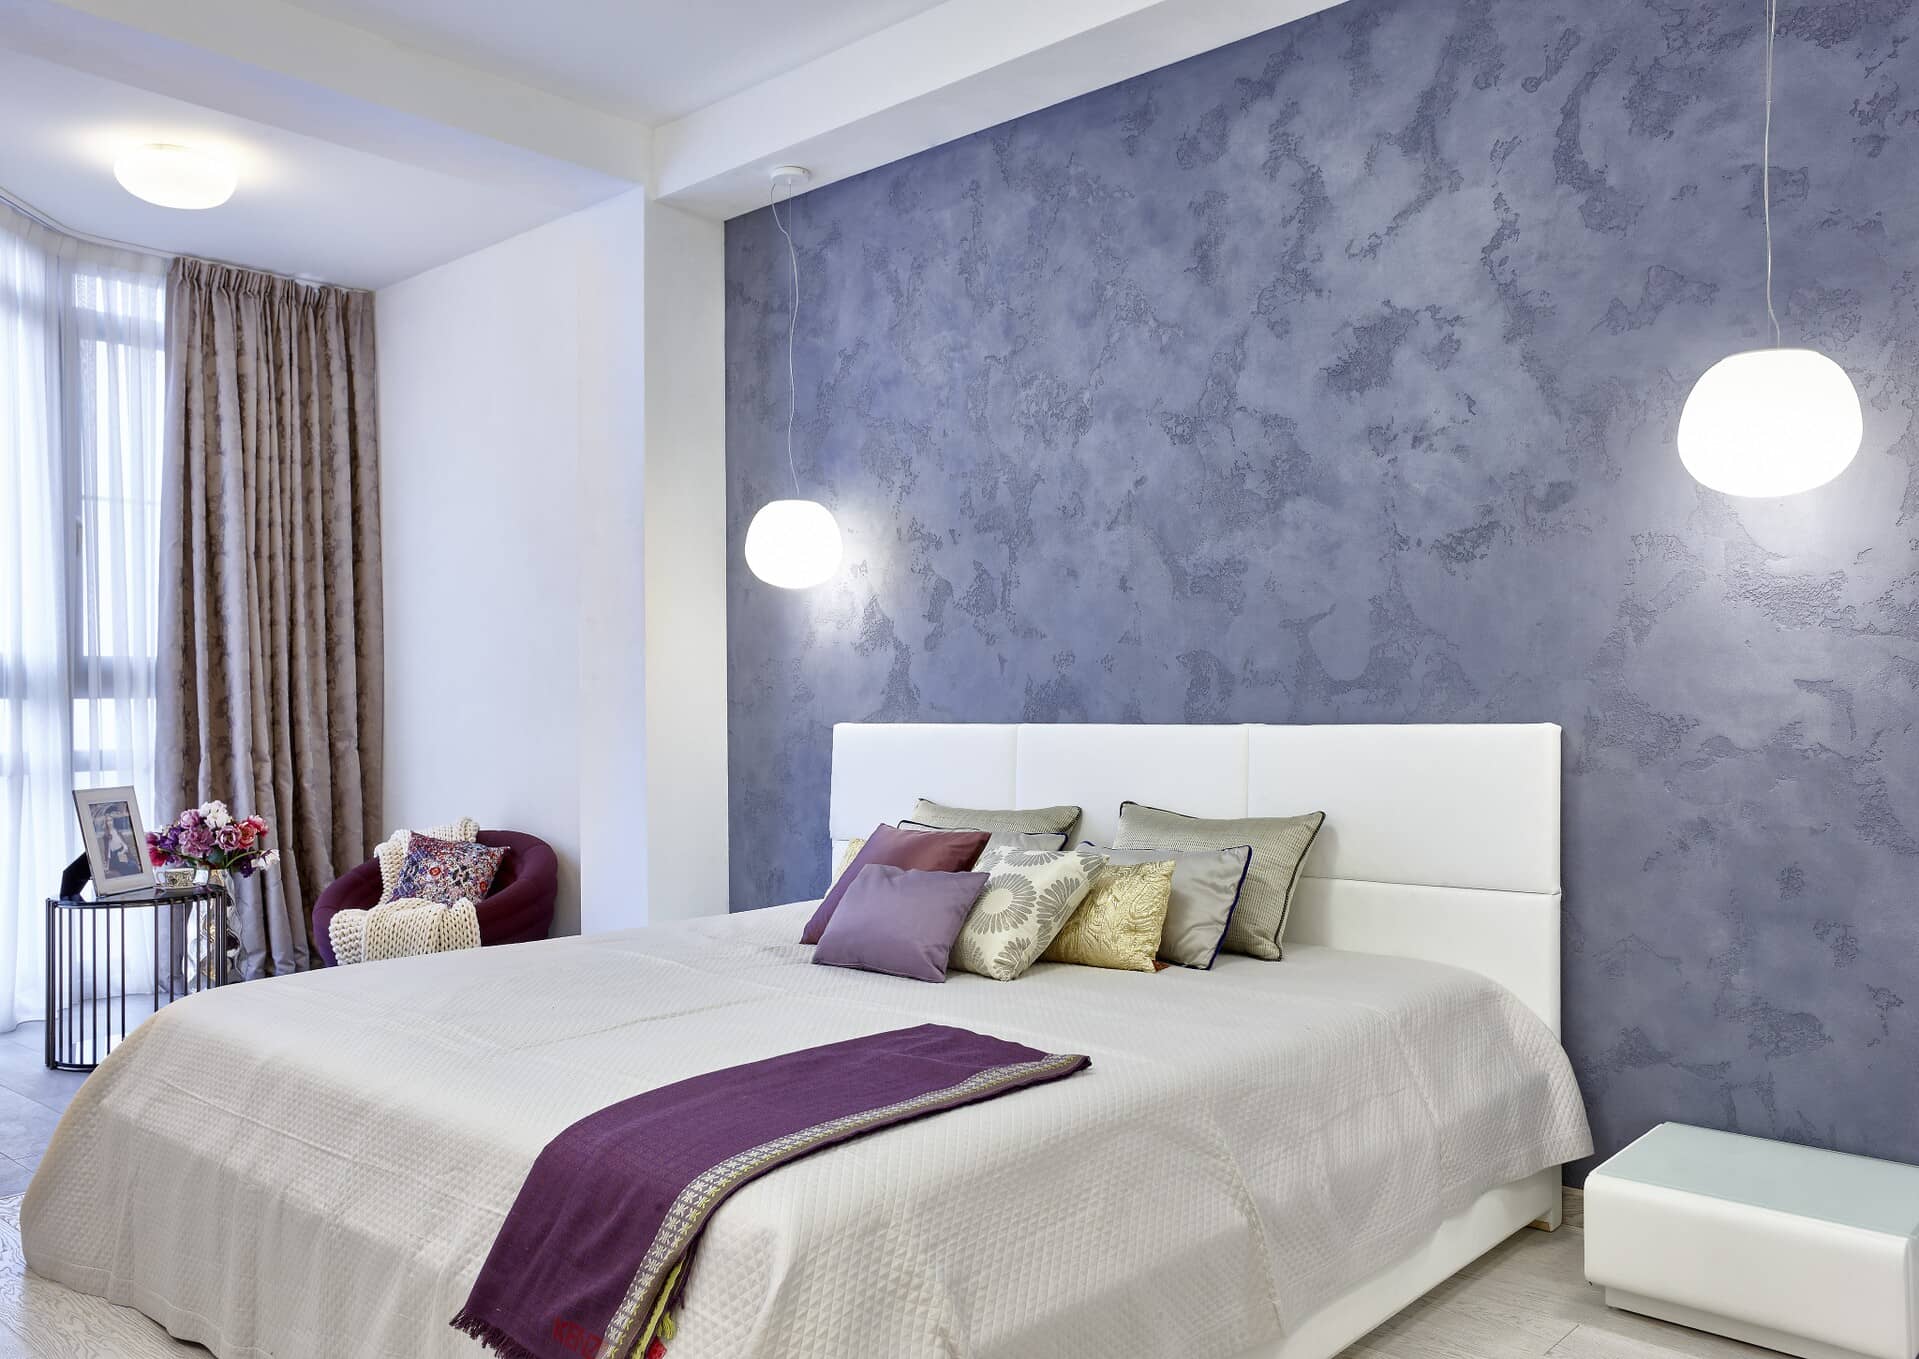 Современная спальня с деталями оттенков лилового и малинового цвета